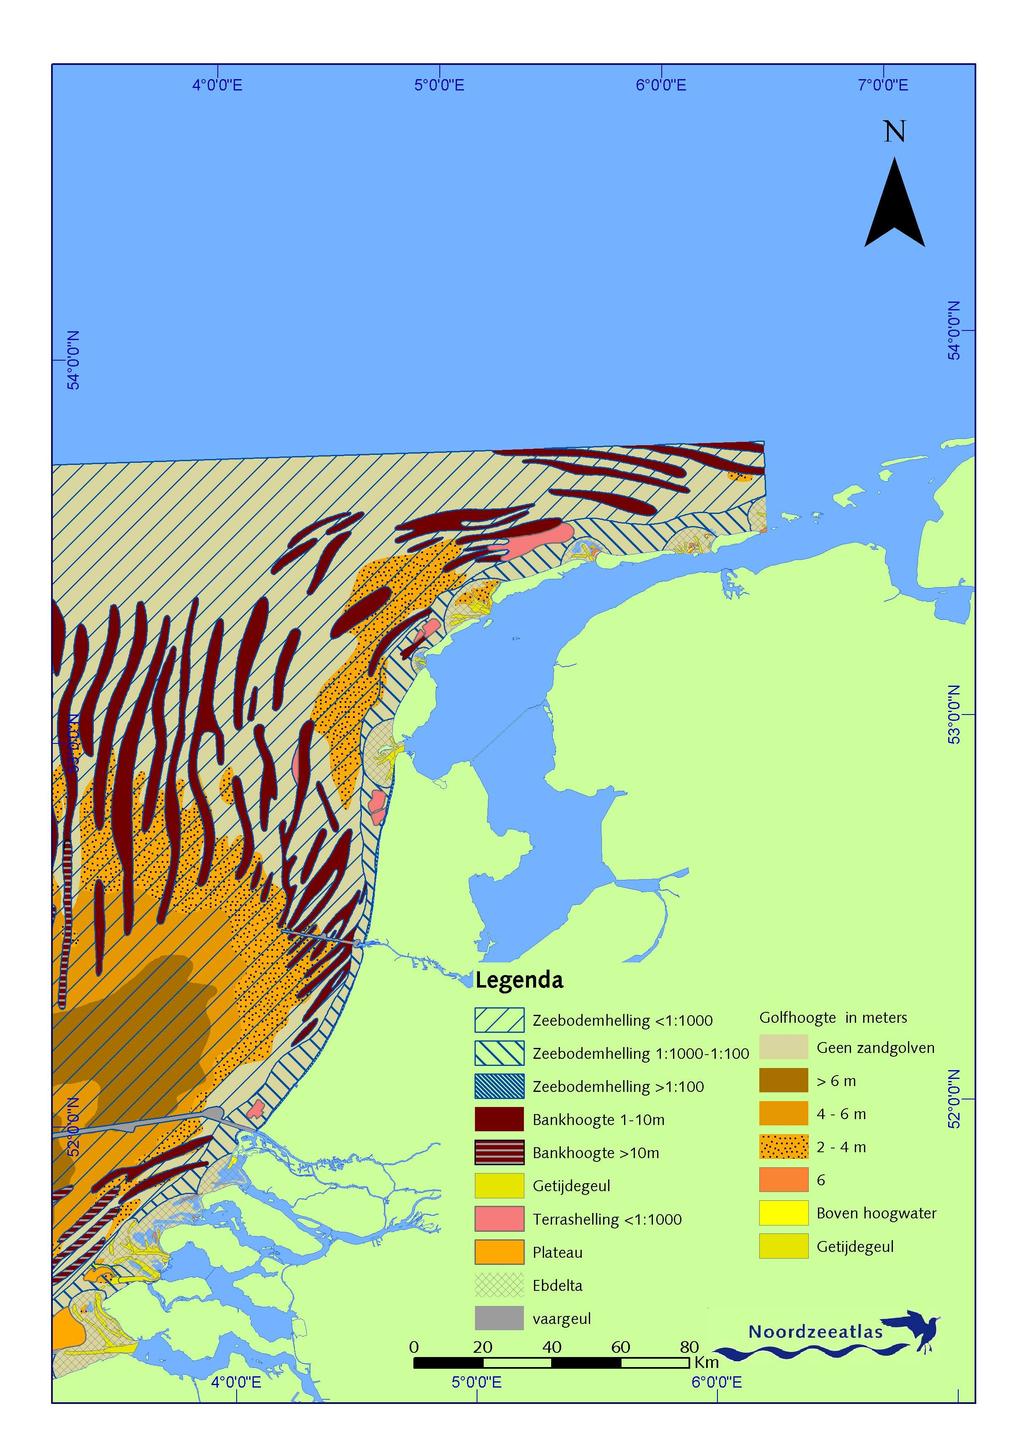 Figure 2. Geomorphology of the Dutch Continental Shelf (www.noordzeeatlas.